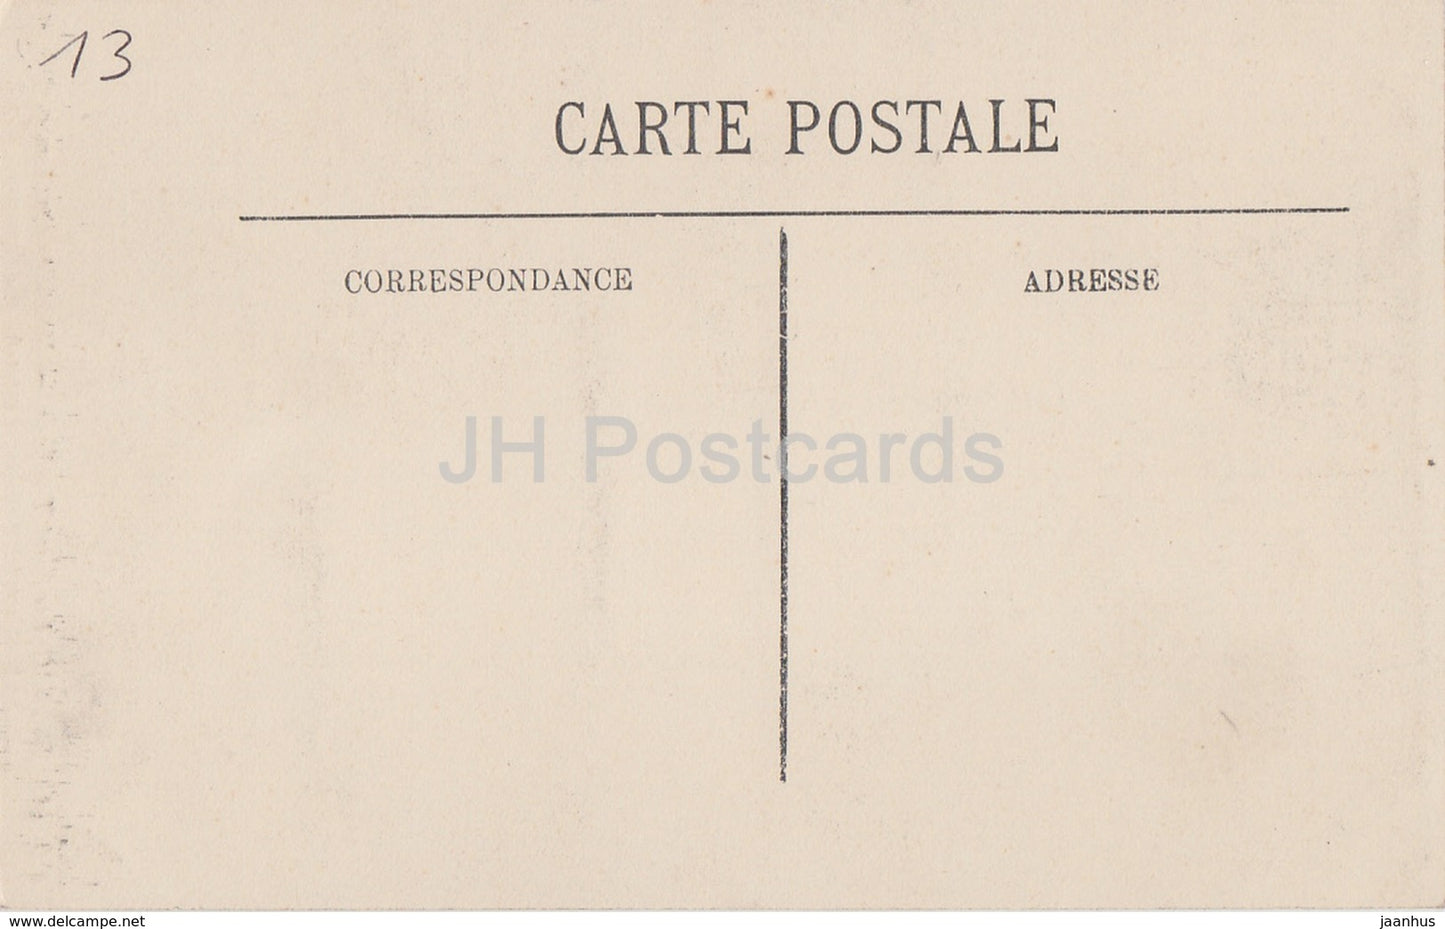 Arles - Cloitre Saint Trophime - Medaillon aux Armes de Frederic Barberousse - 129 - alte Postkarte - Frankreich - unbenutzt